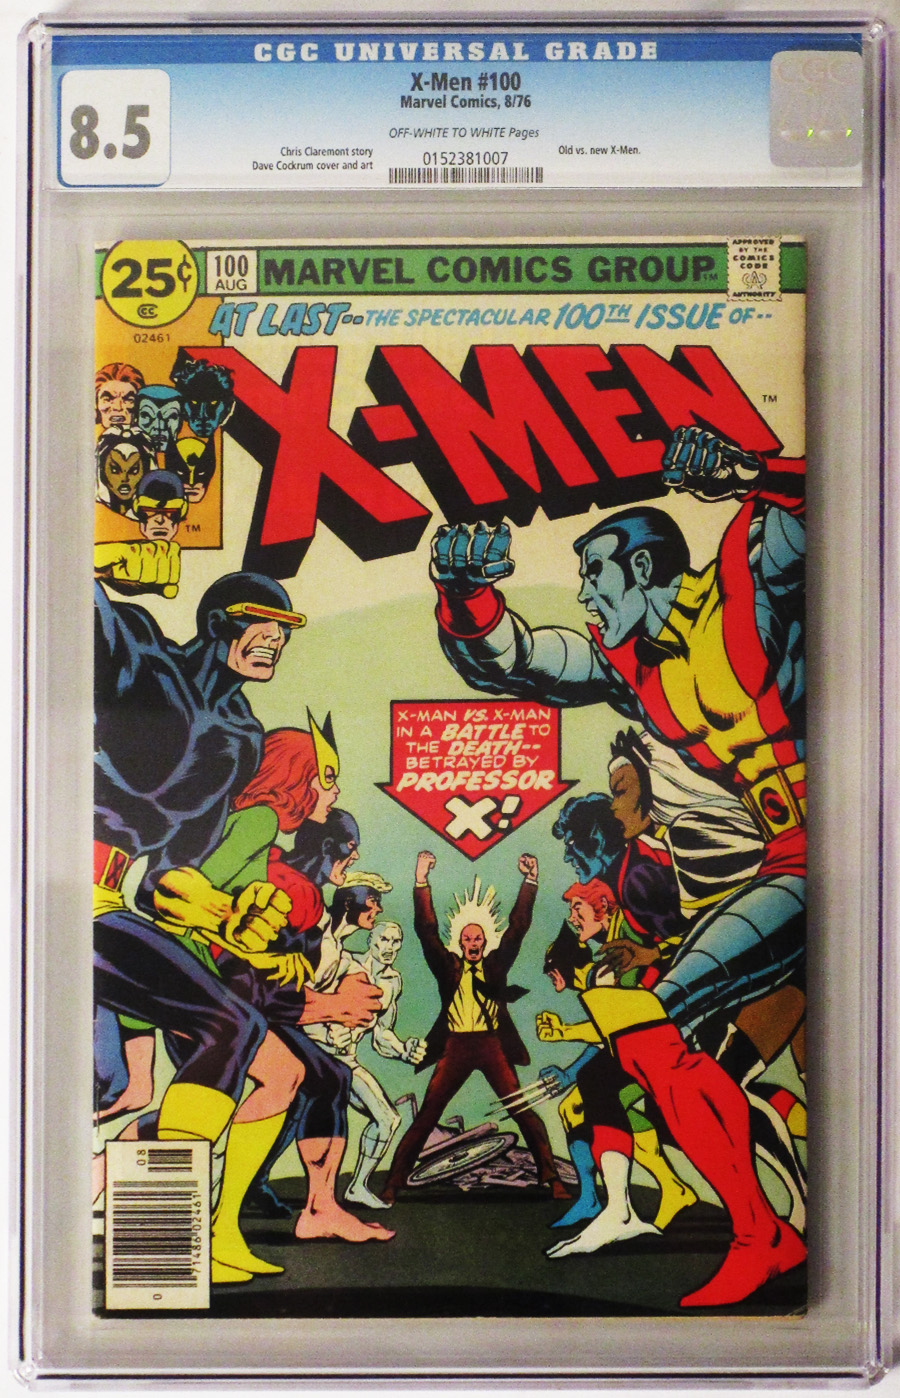 X-Men Vol 1 #100 Cover D CGC 8.5 25-Cent Regular Cover